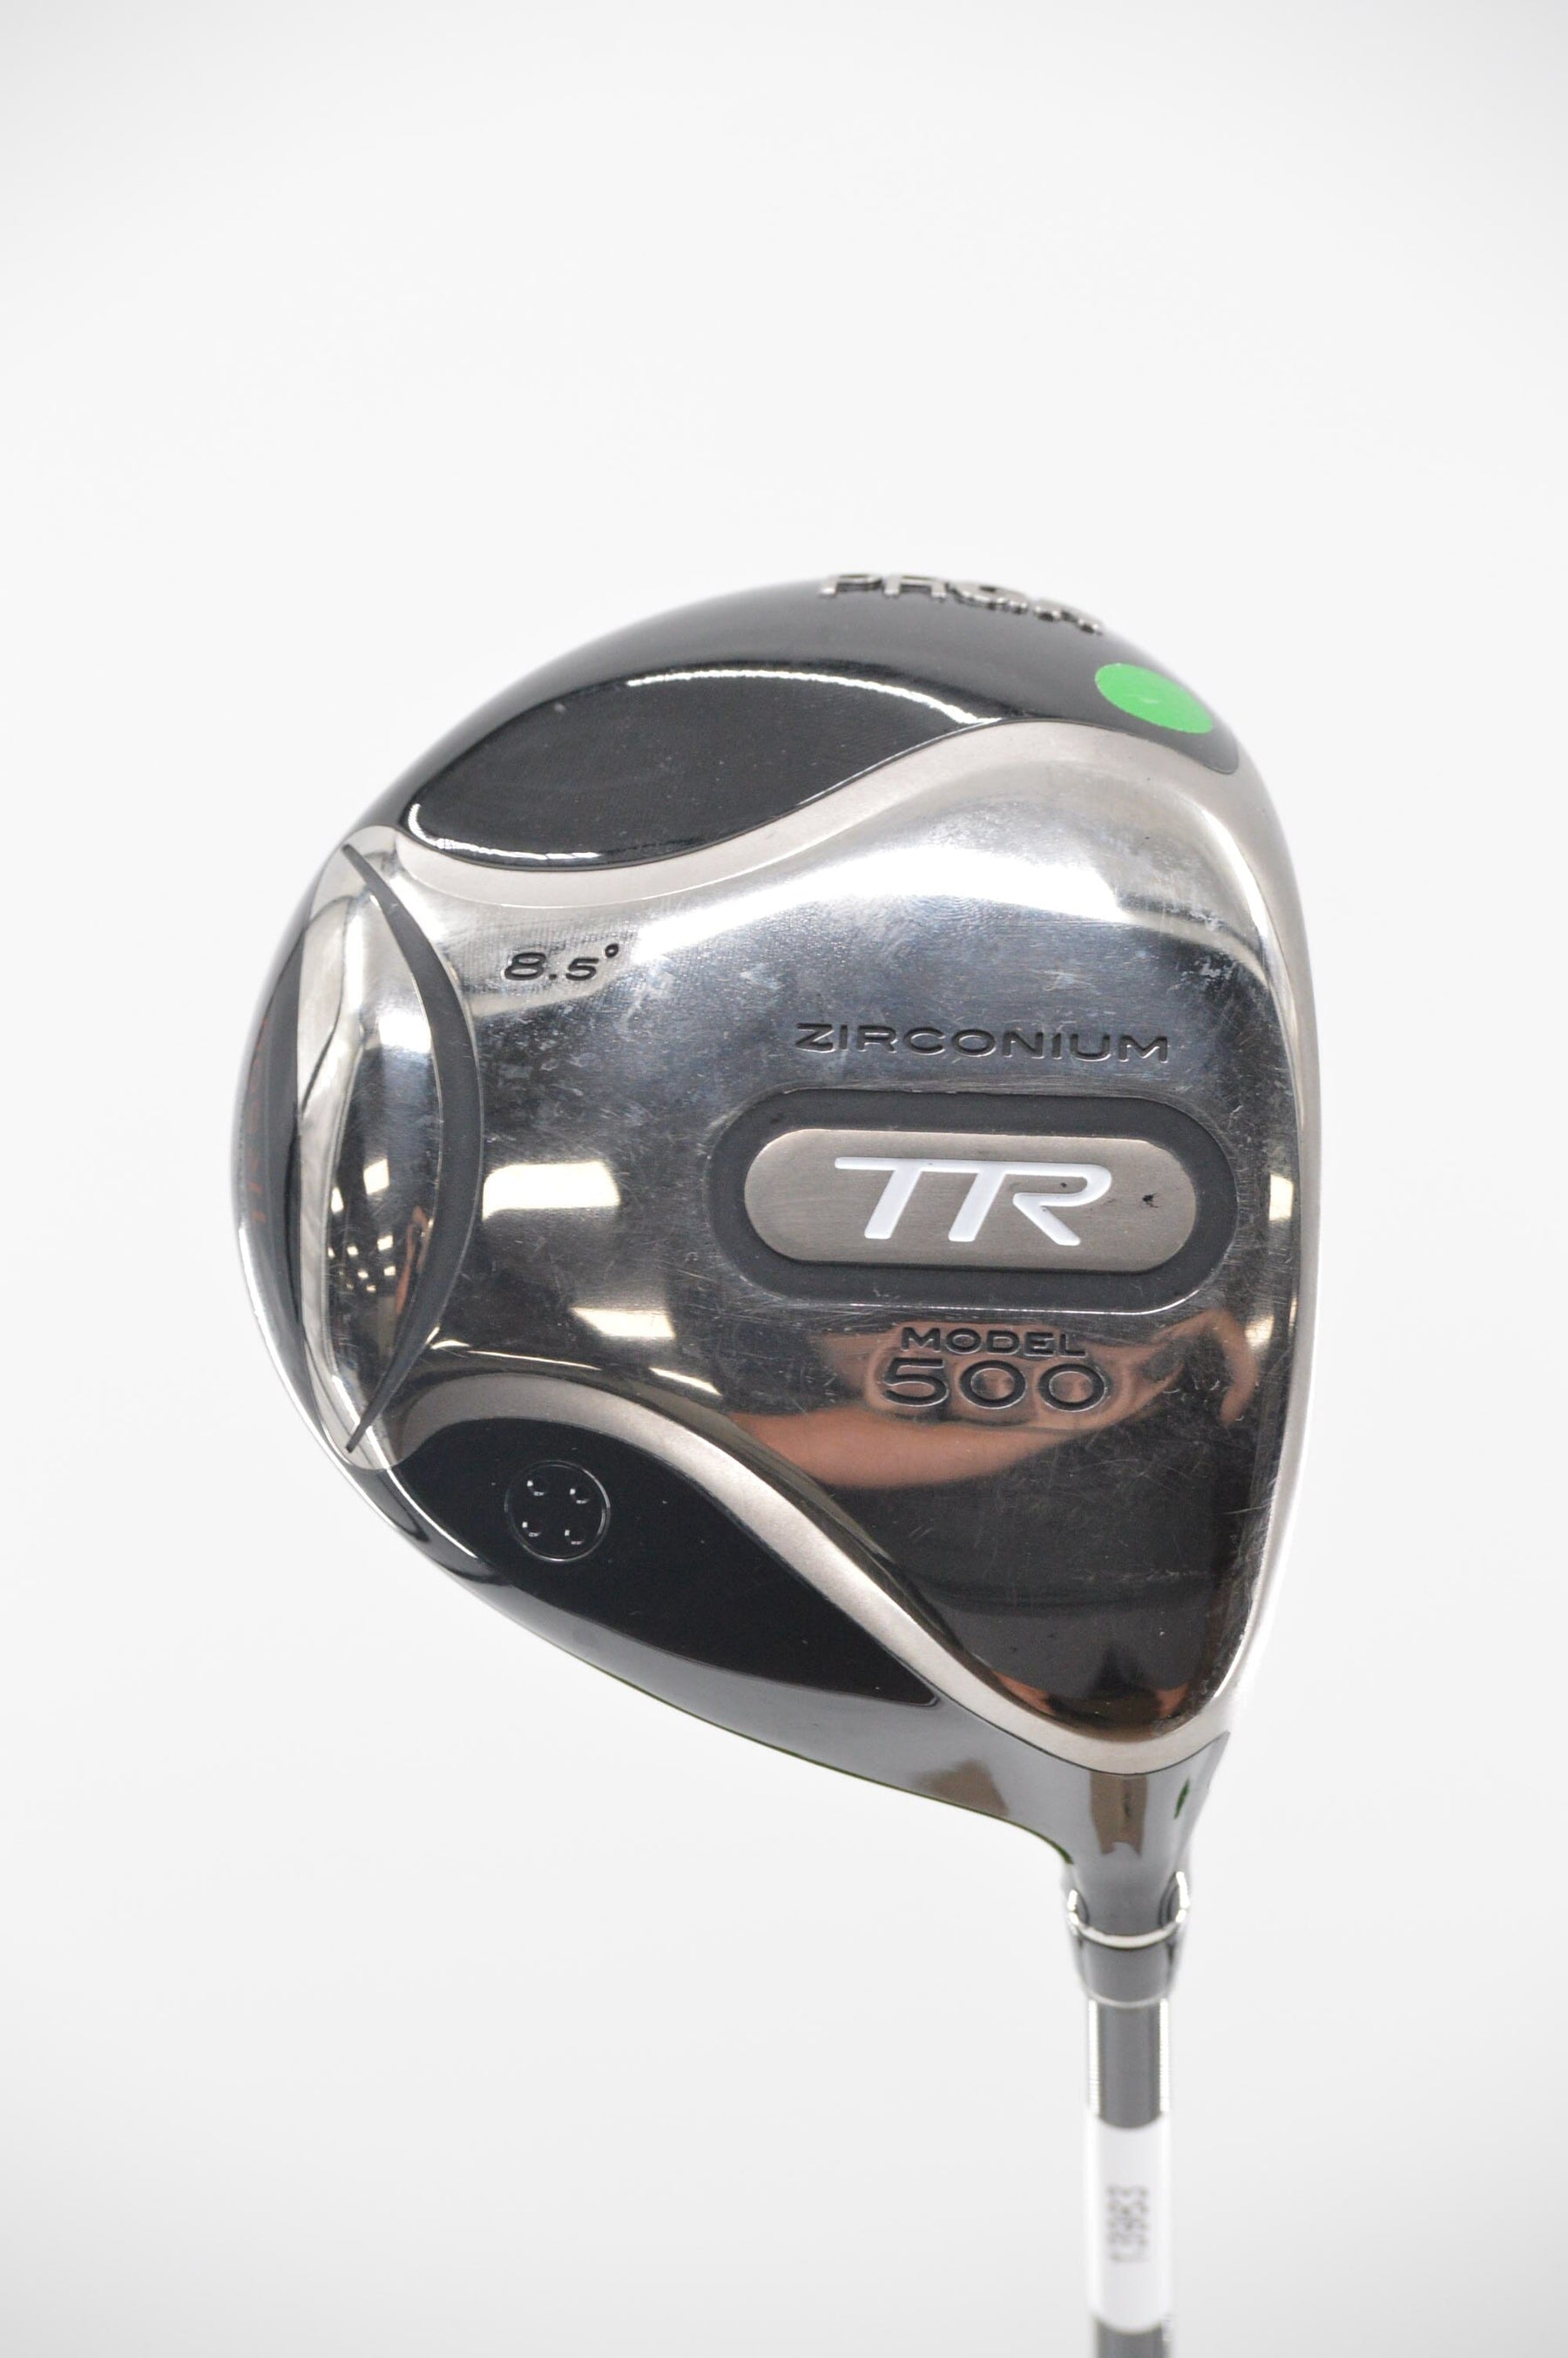 PRGR Zirconium TR Model 500 8.5 Degree Driver S Flex Golf Clubs GolfRoots 